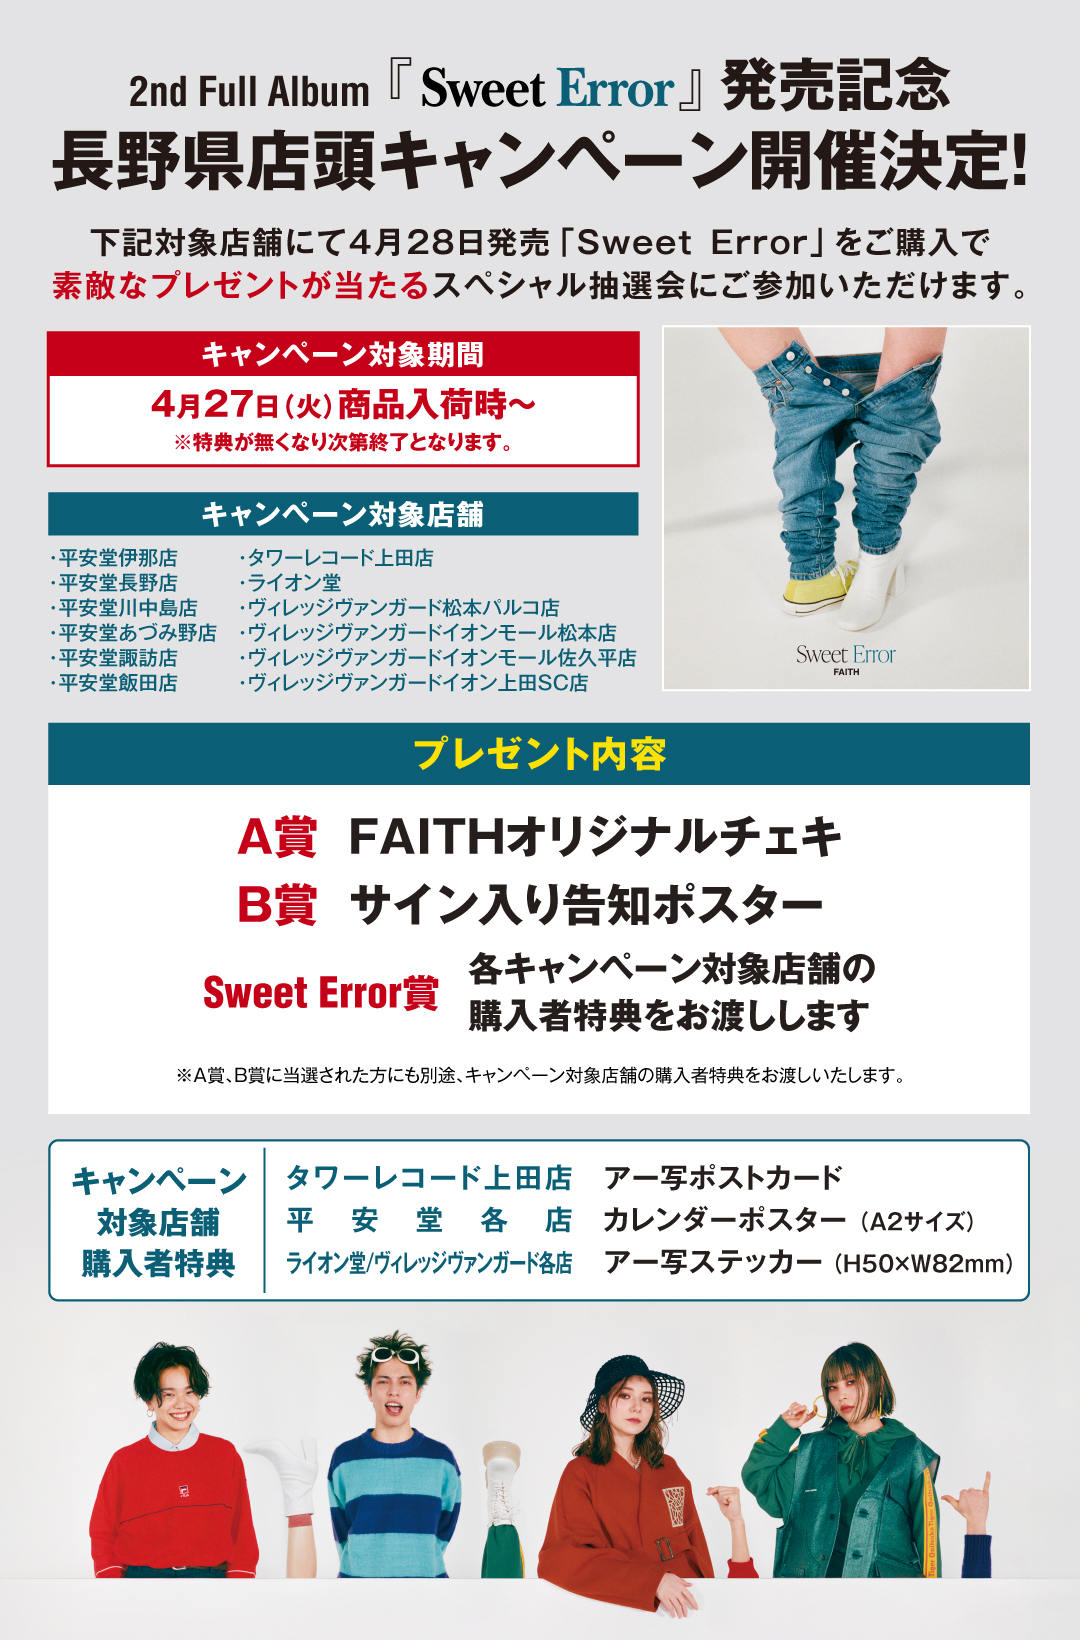 2nd Full Album Sweet Error 発売記念 長野県cdショップ店頭キャンペーン開催決定 Faith